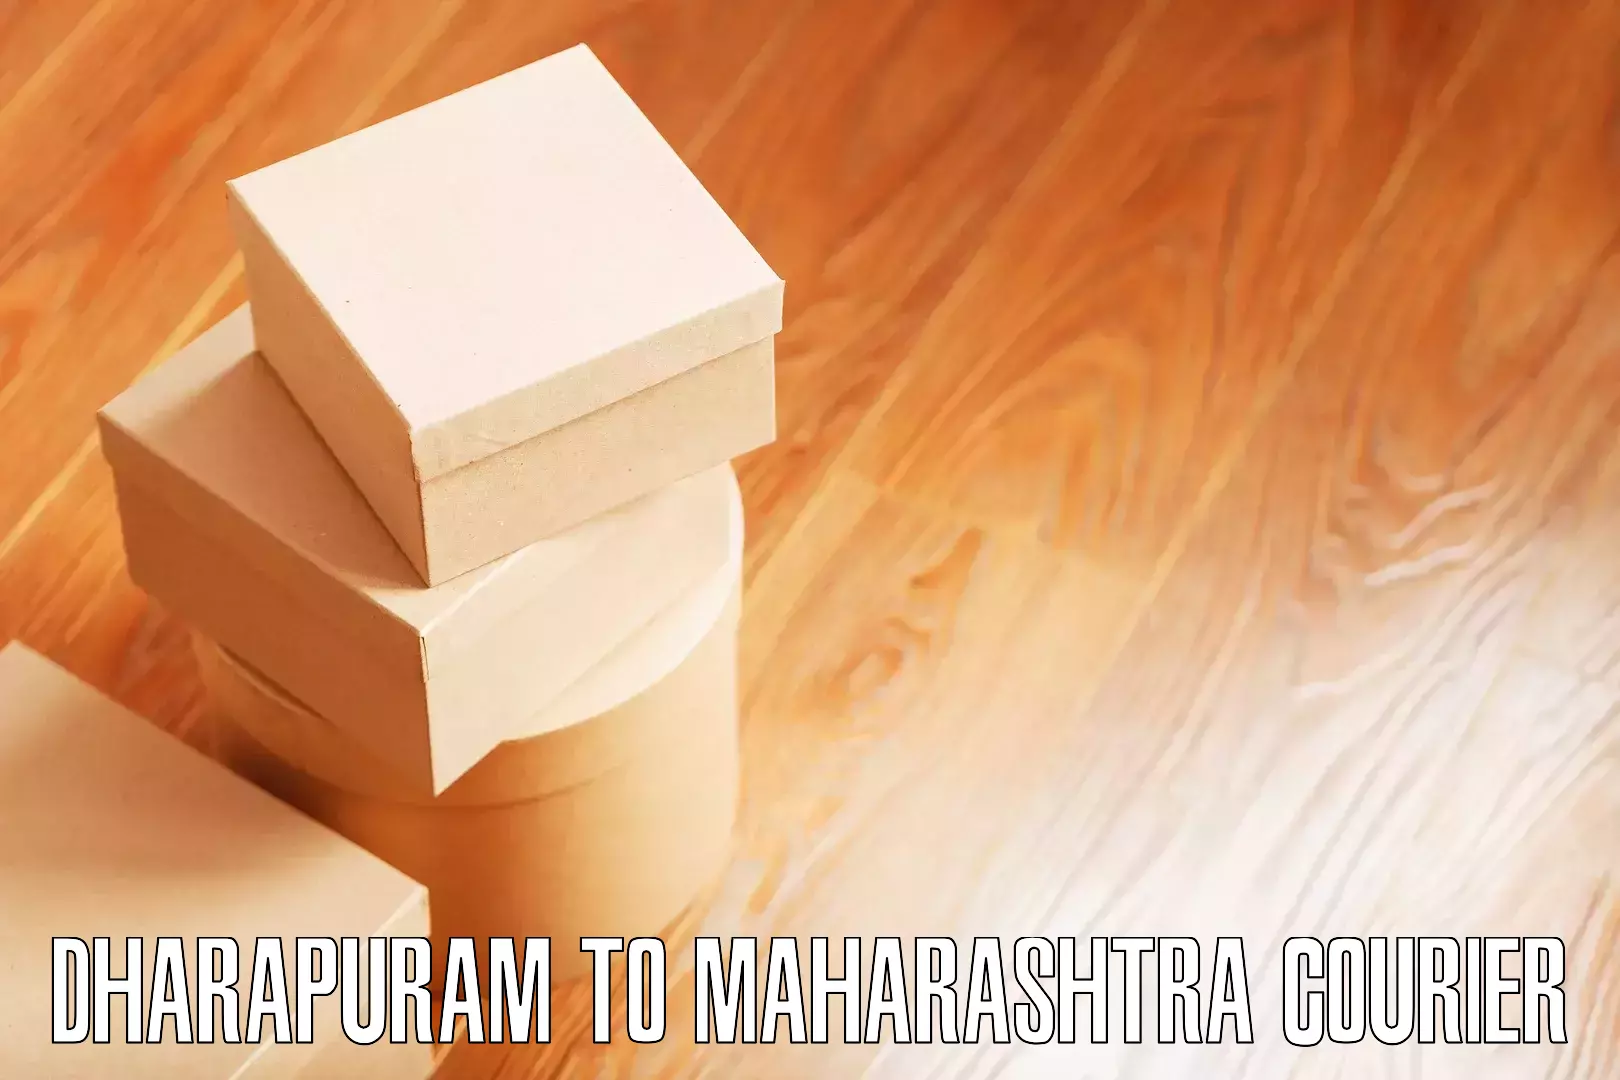 Home moving experts Dharapuram to Maharashtra